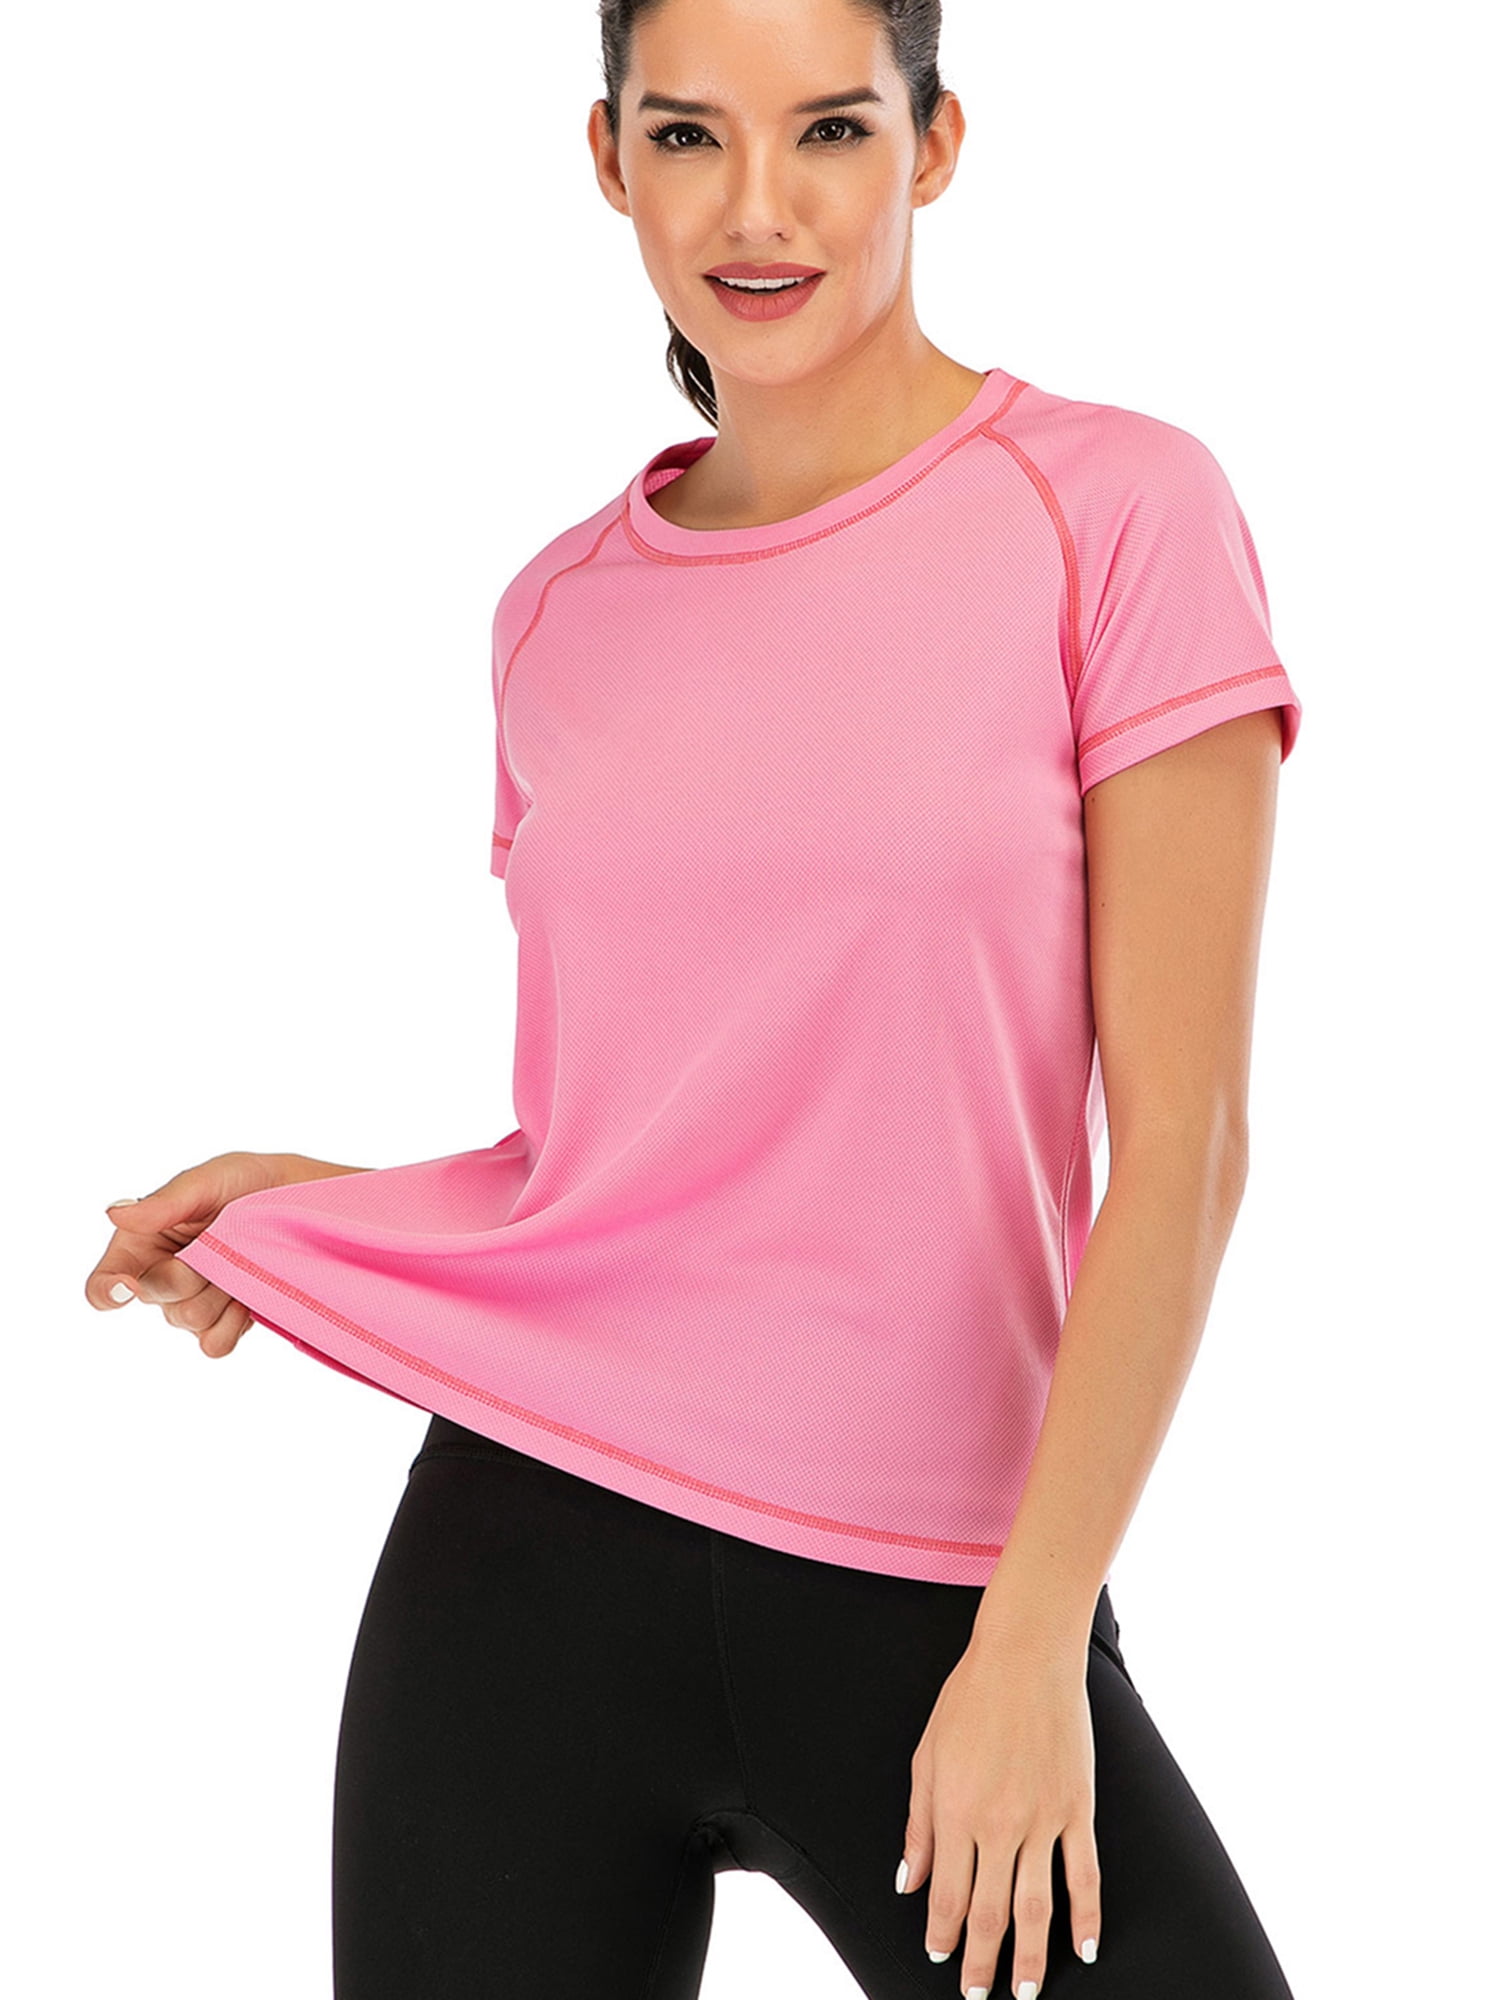 women's workout short sleeve shirts